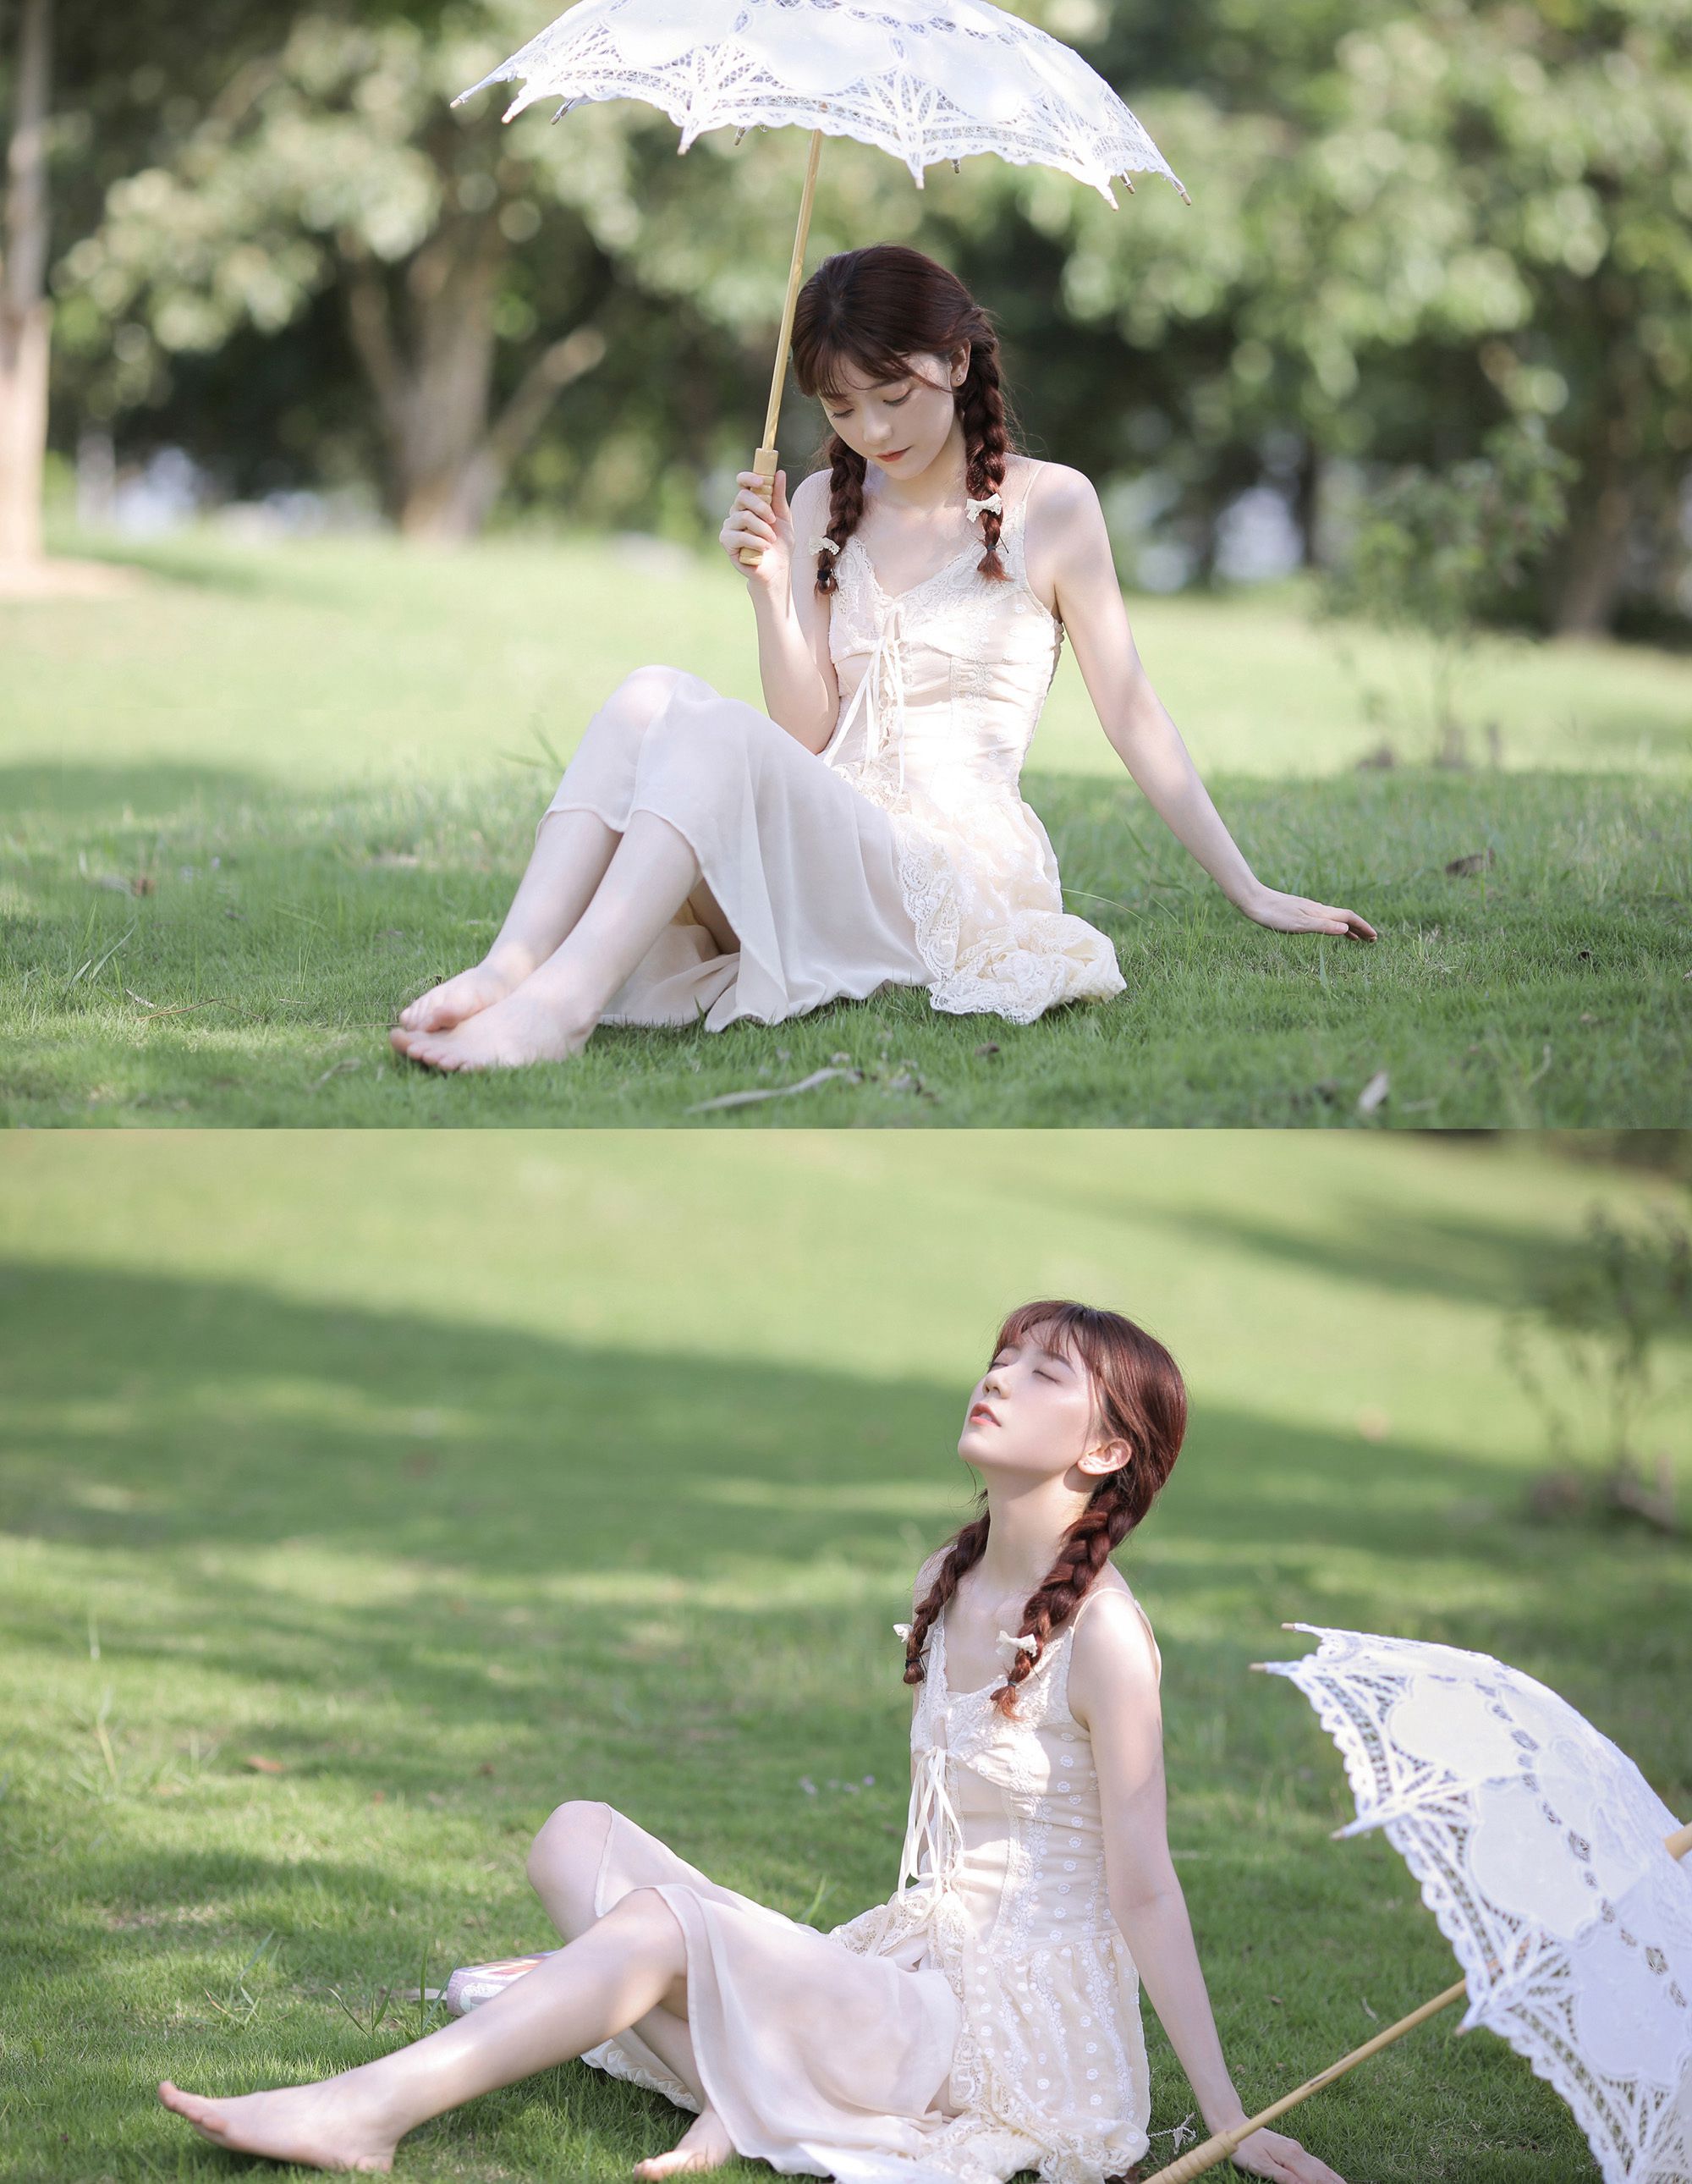 赤足行走在草地上的清纯吊带蕾丝裙双麻花辫美少女超美高清写真图片图片